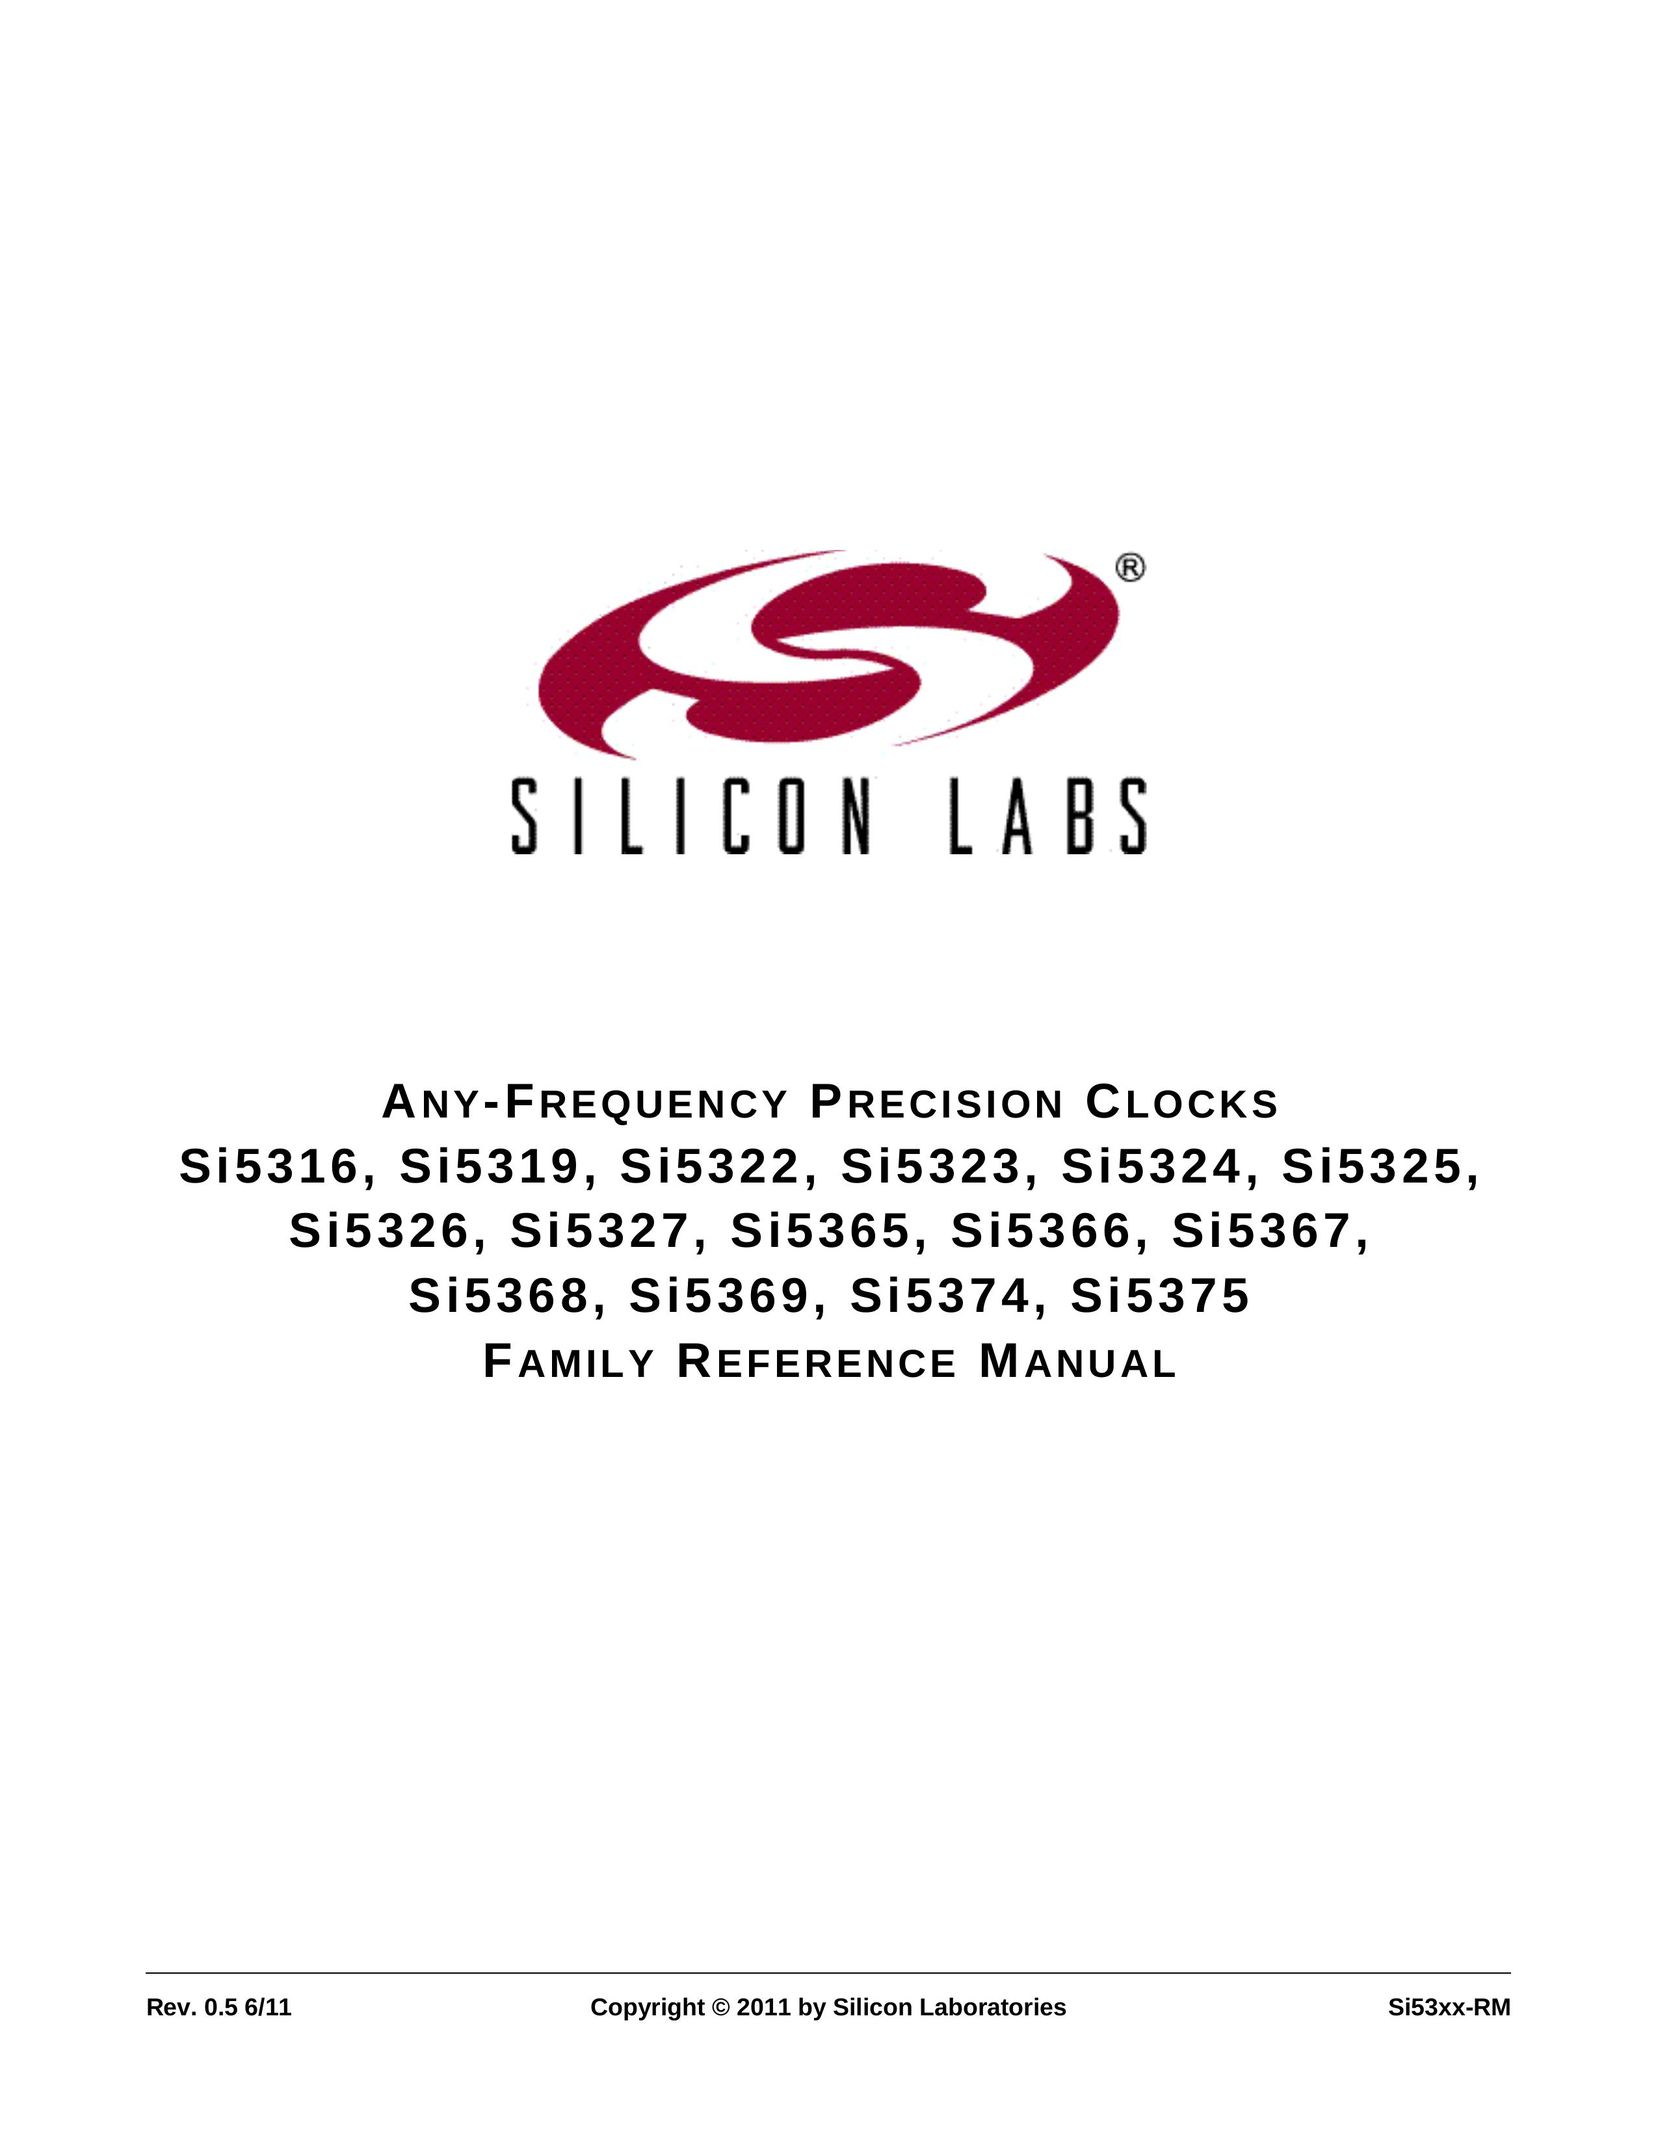 Silicon Laboratories SI5319 Clock User Manual